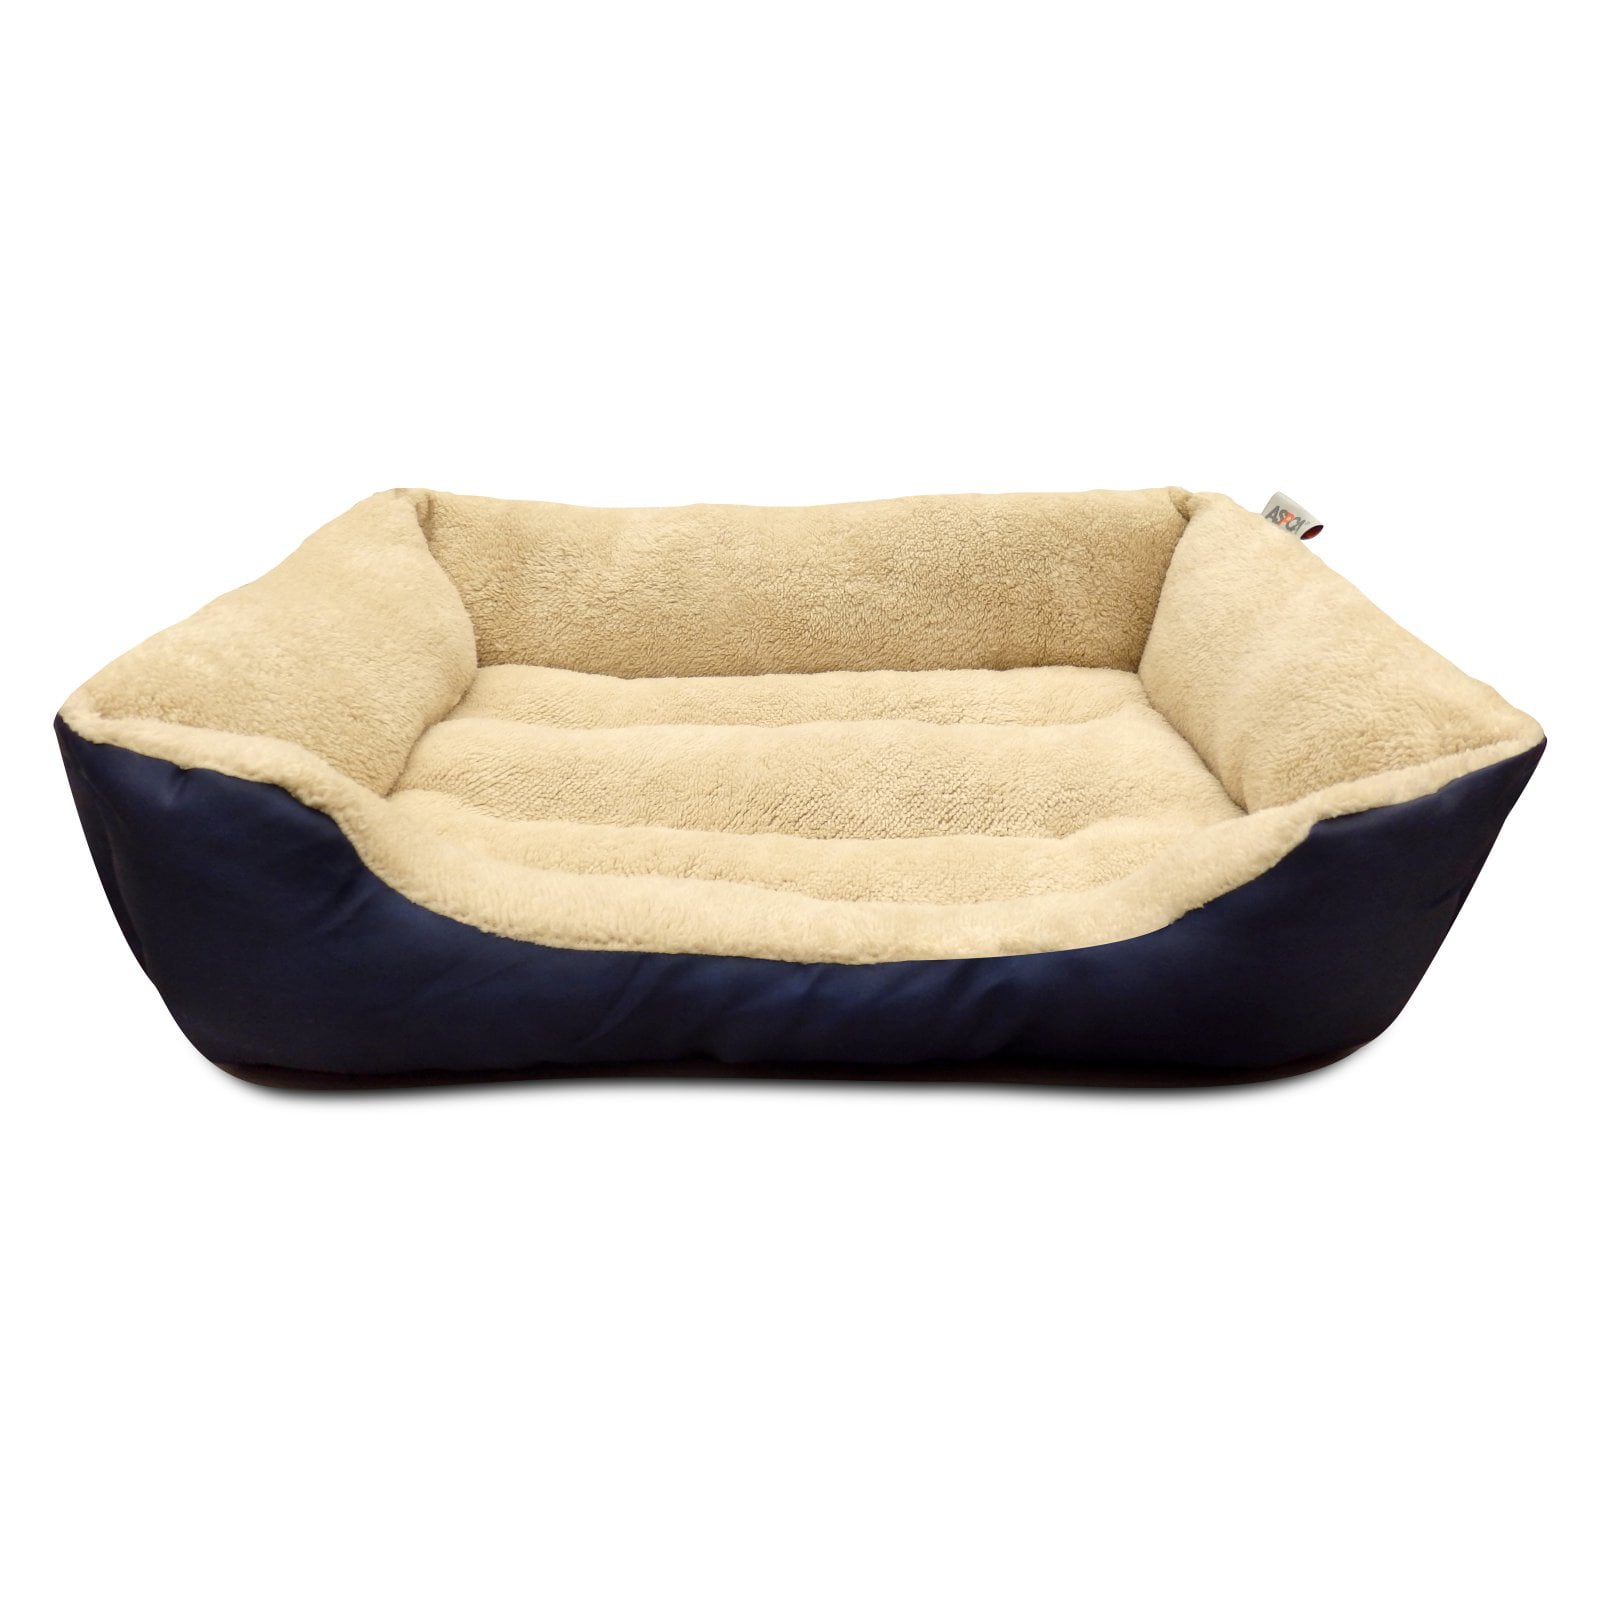 medium size dog bed